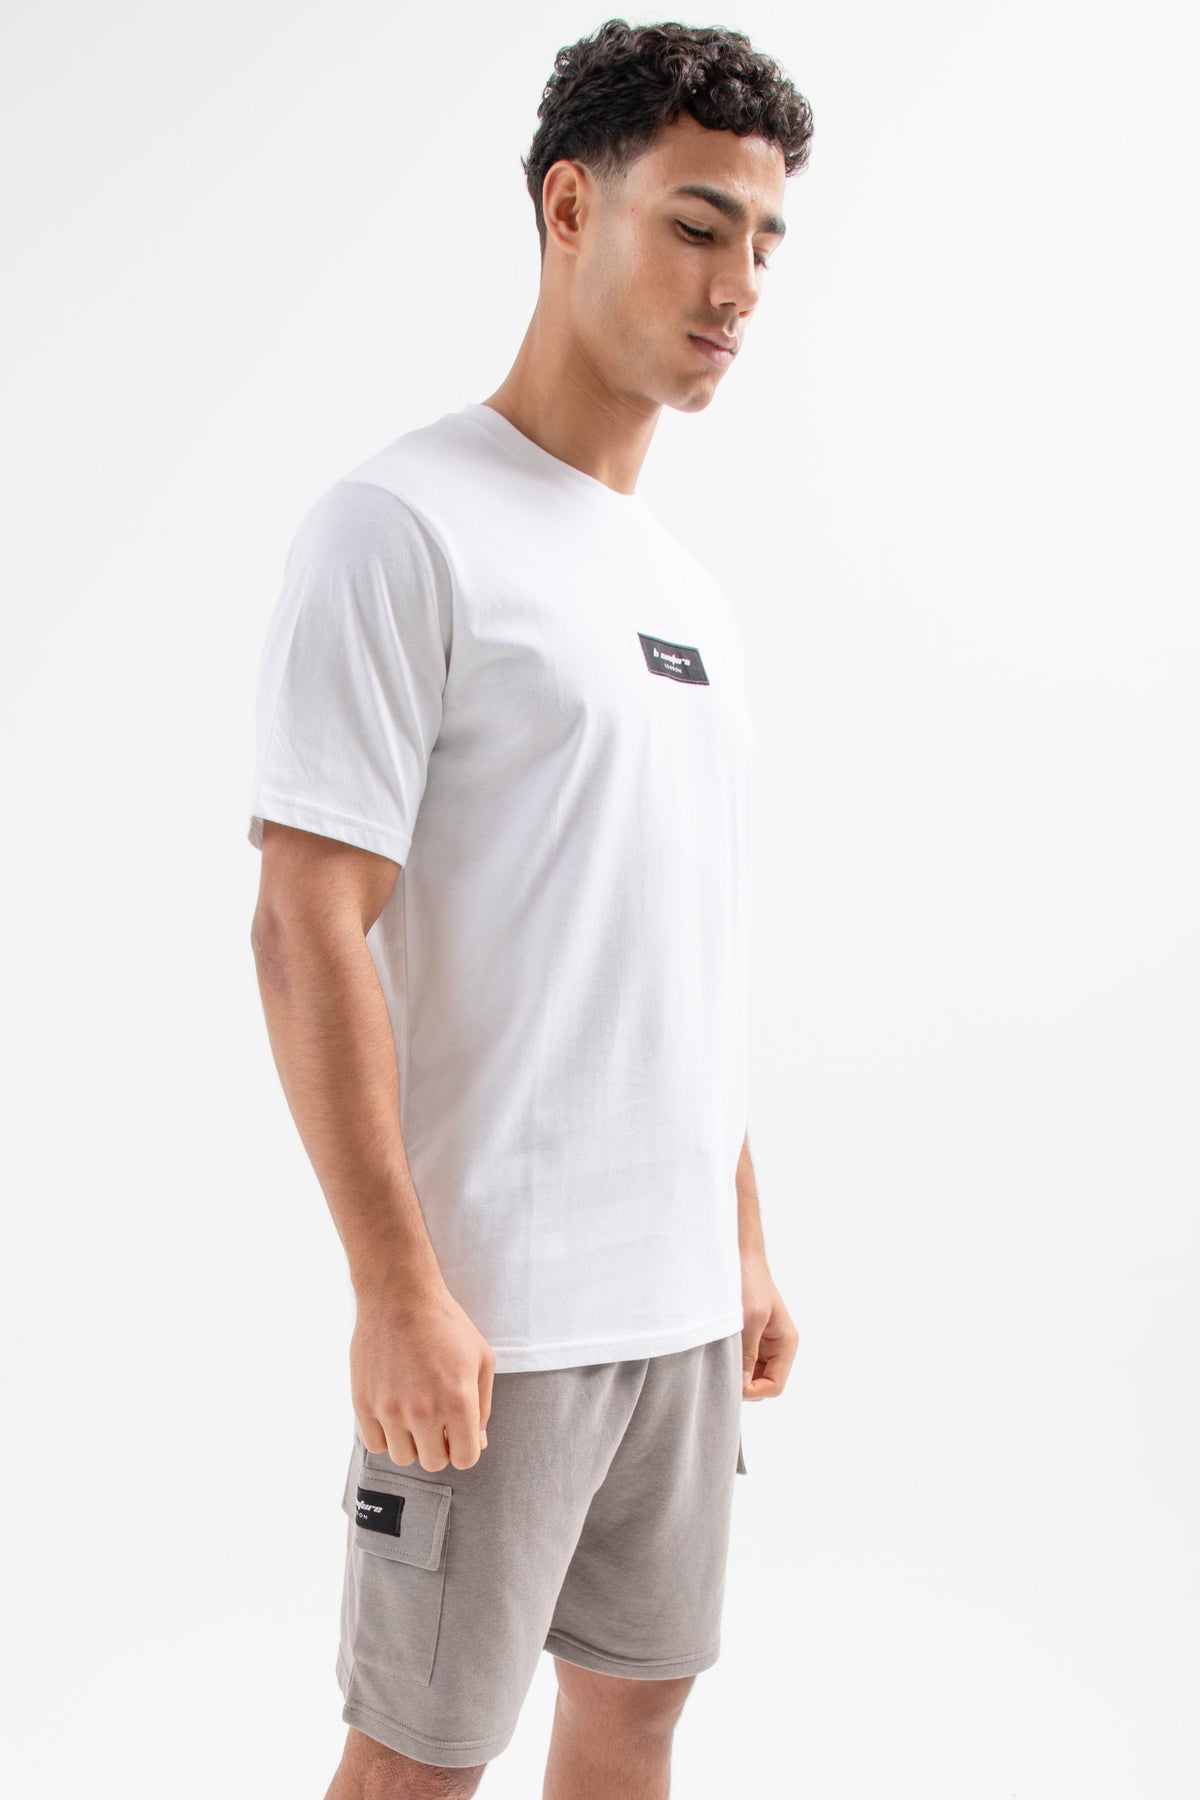 Hampden T-Shirt & Short Set - White/Grey